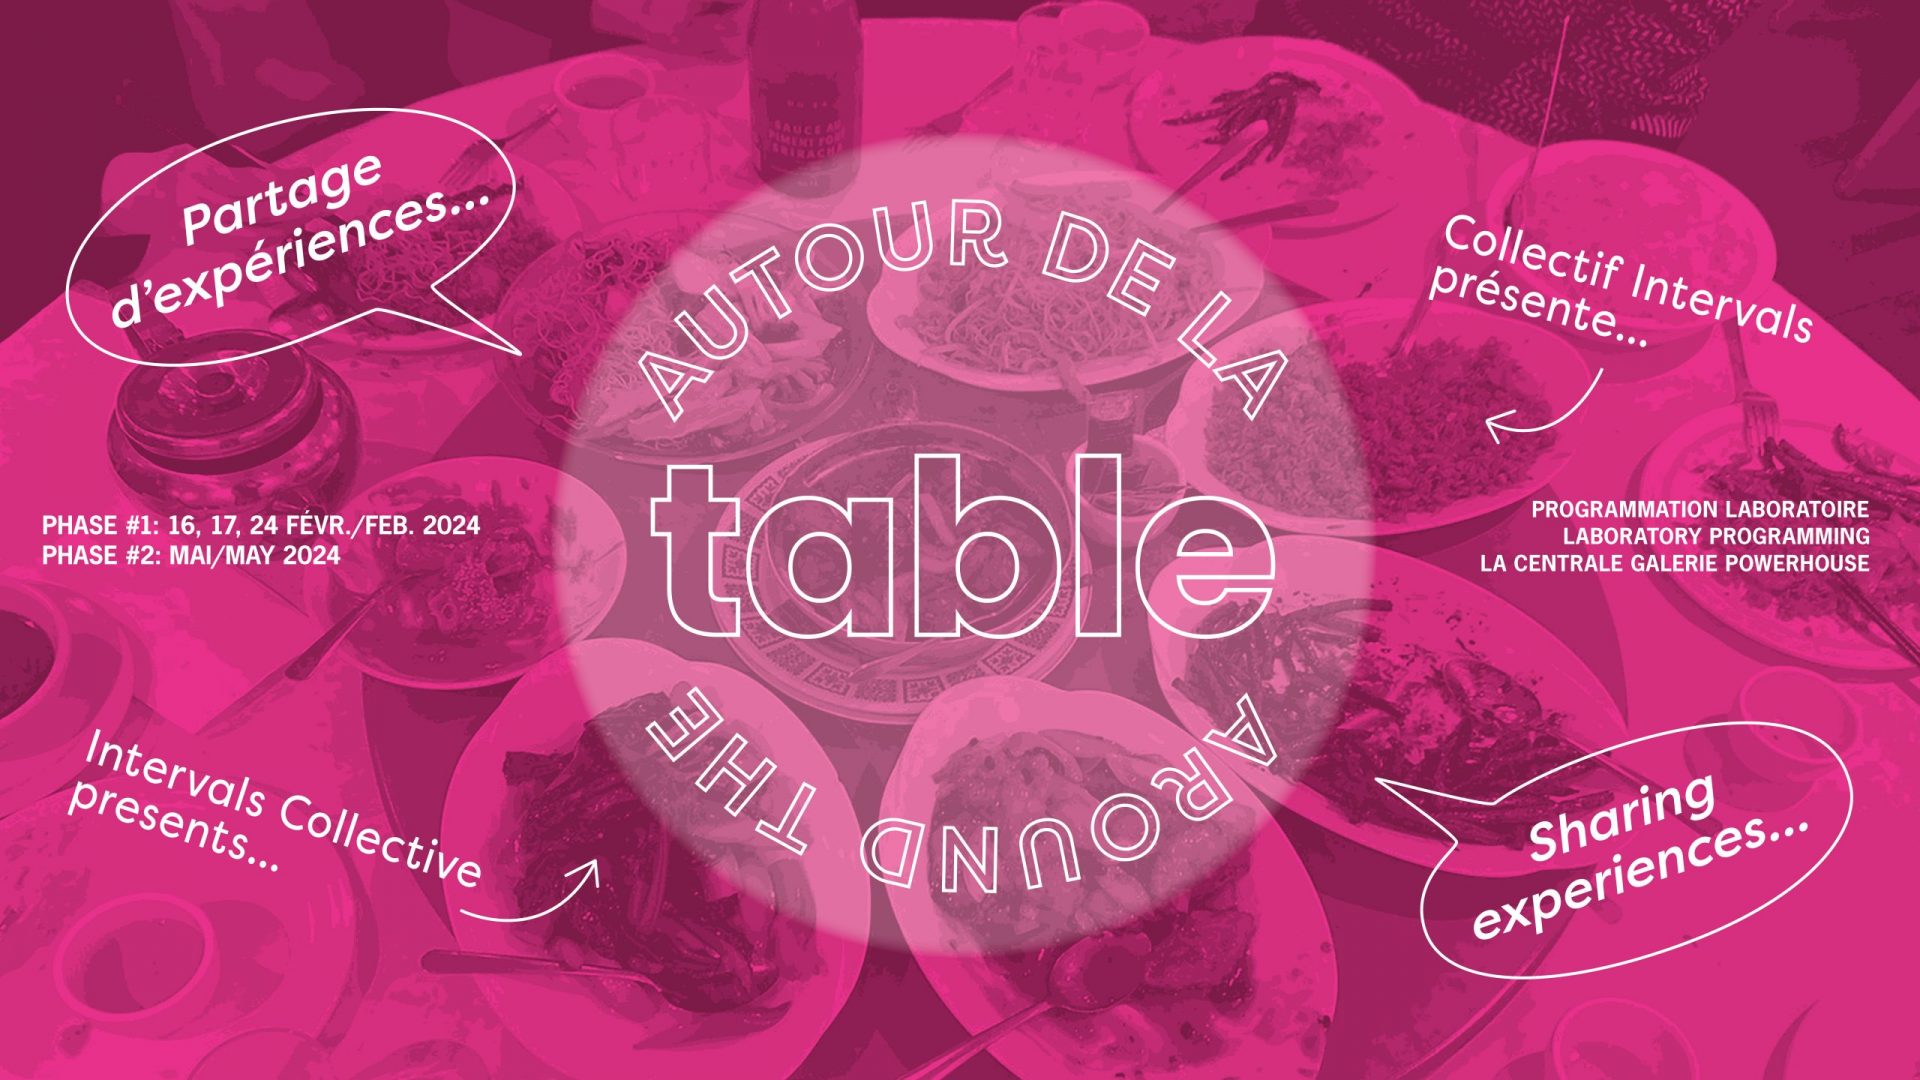 Autour de la table/Around the Table